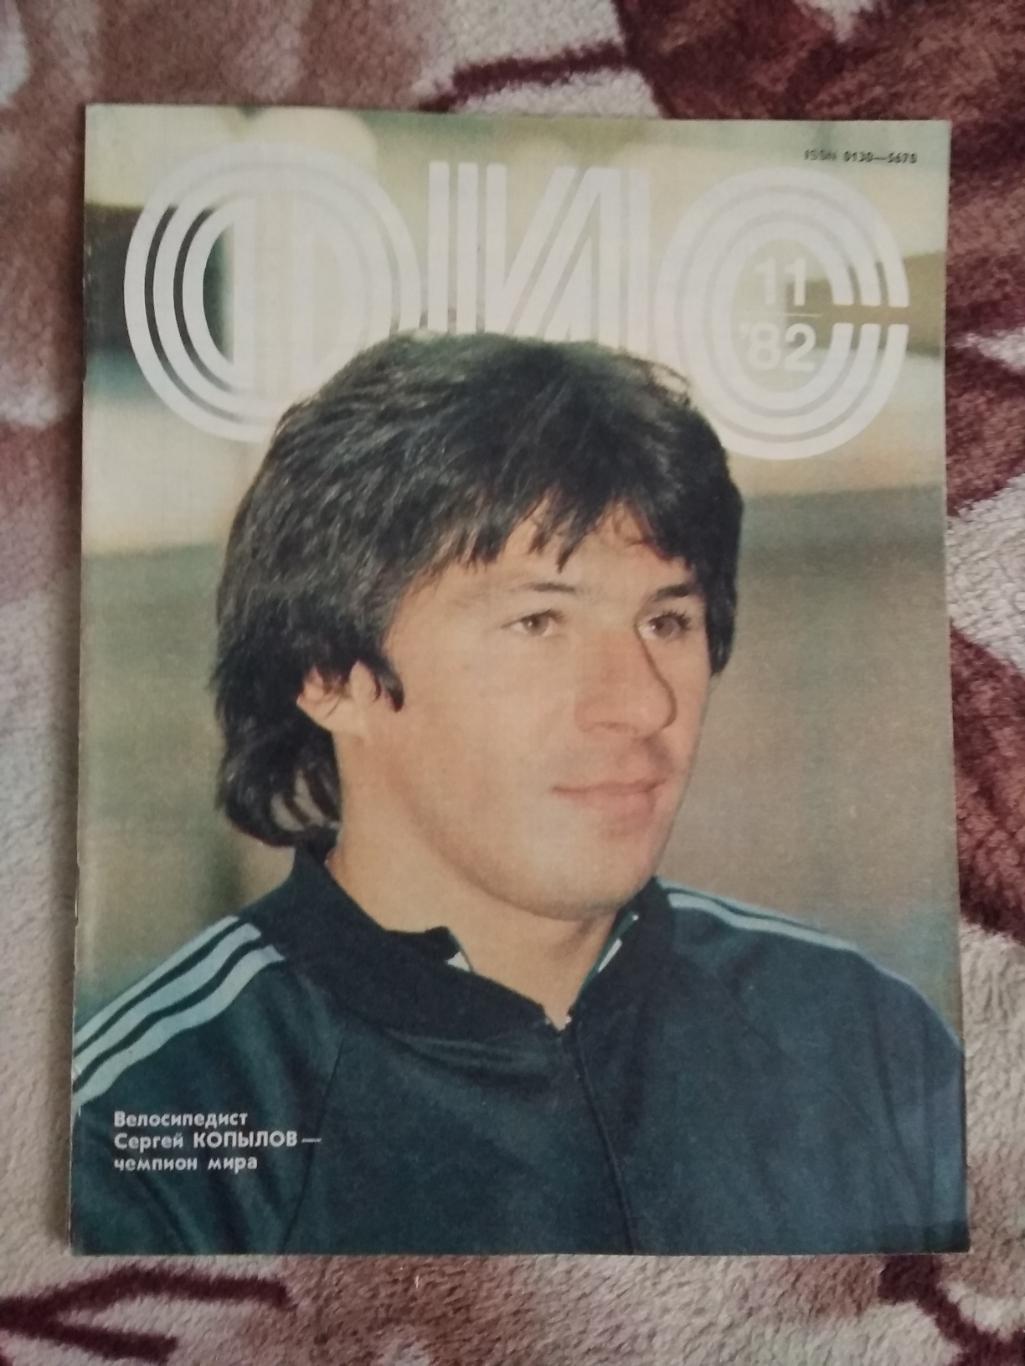 Журнал.Физкультура и спорт № 11 1982 г. (ФиС).